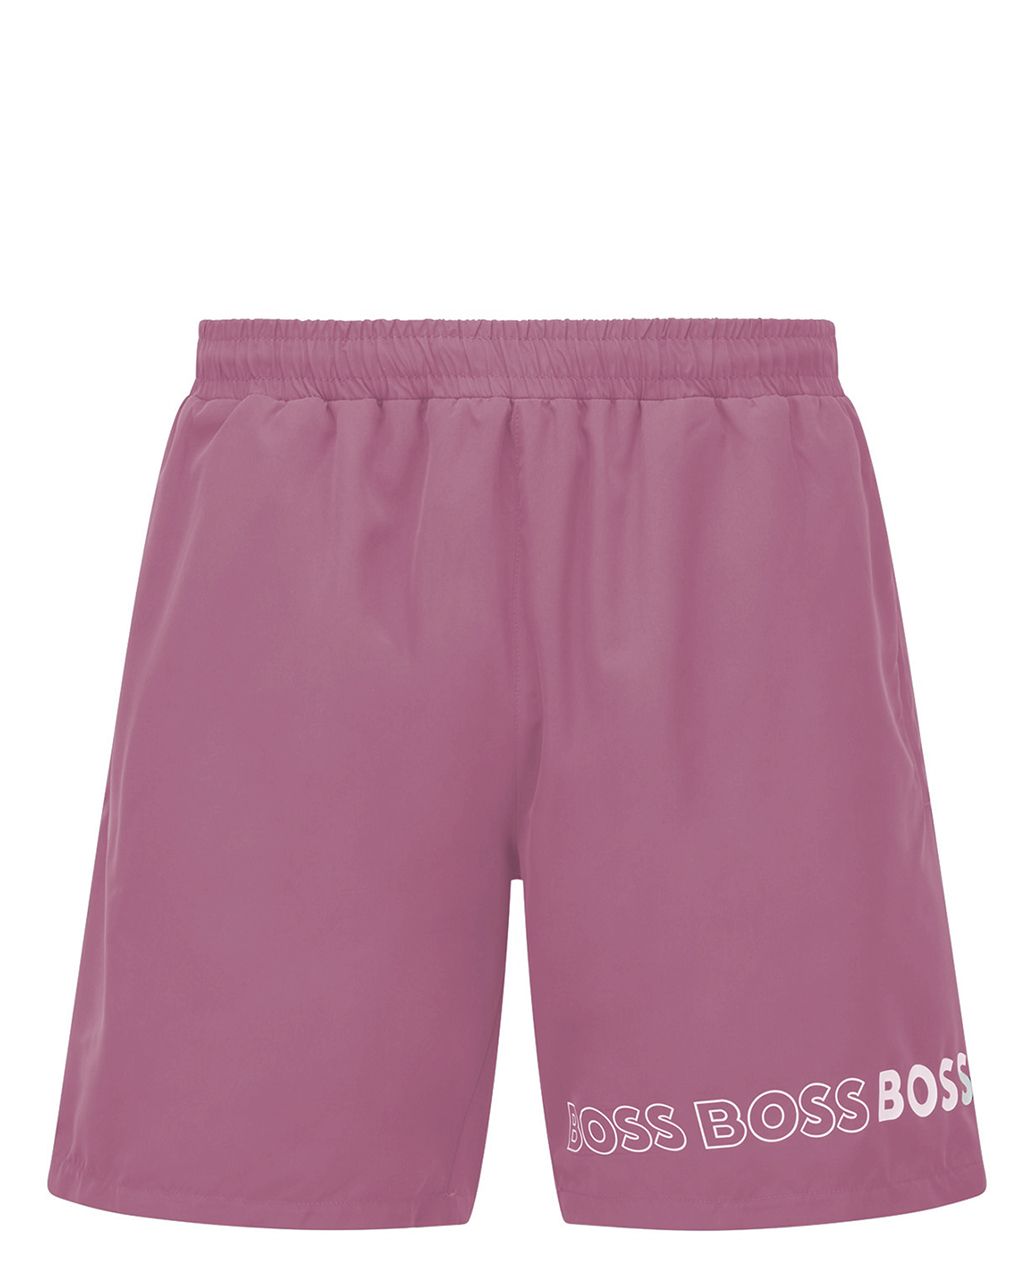 Hugo Boss Menswear Dolphin Zwemshort Roze 076950-001-L